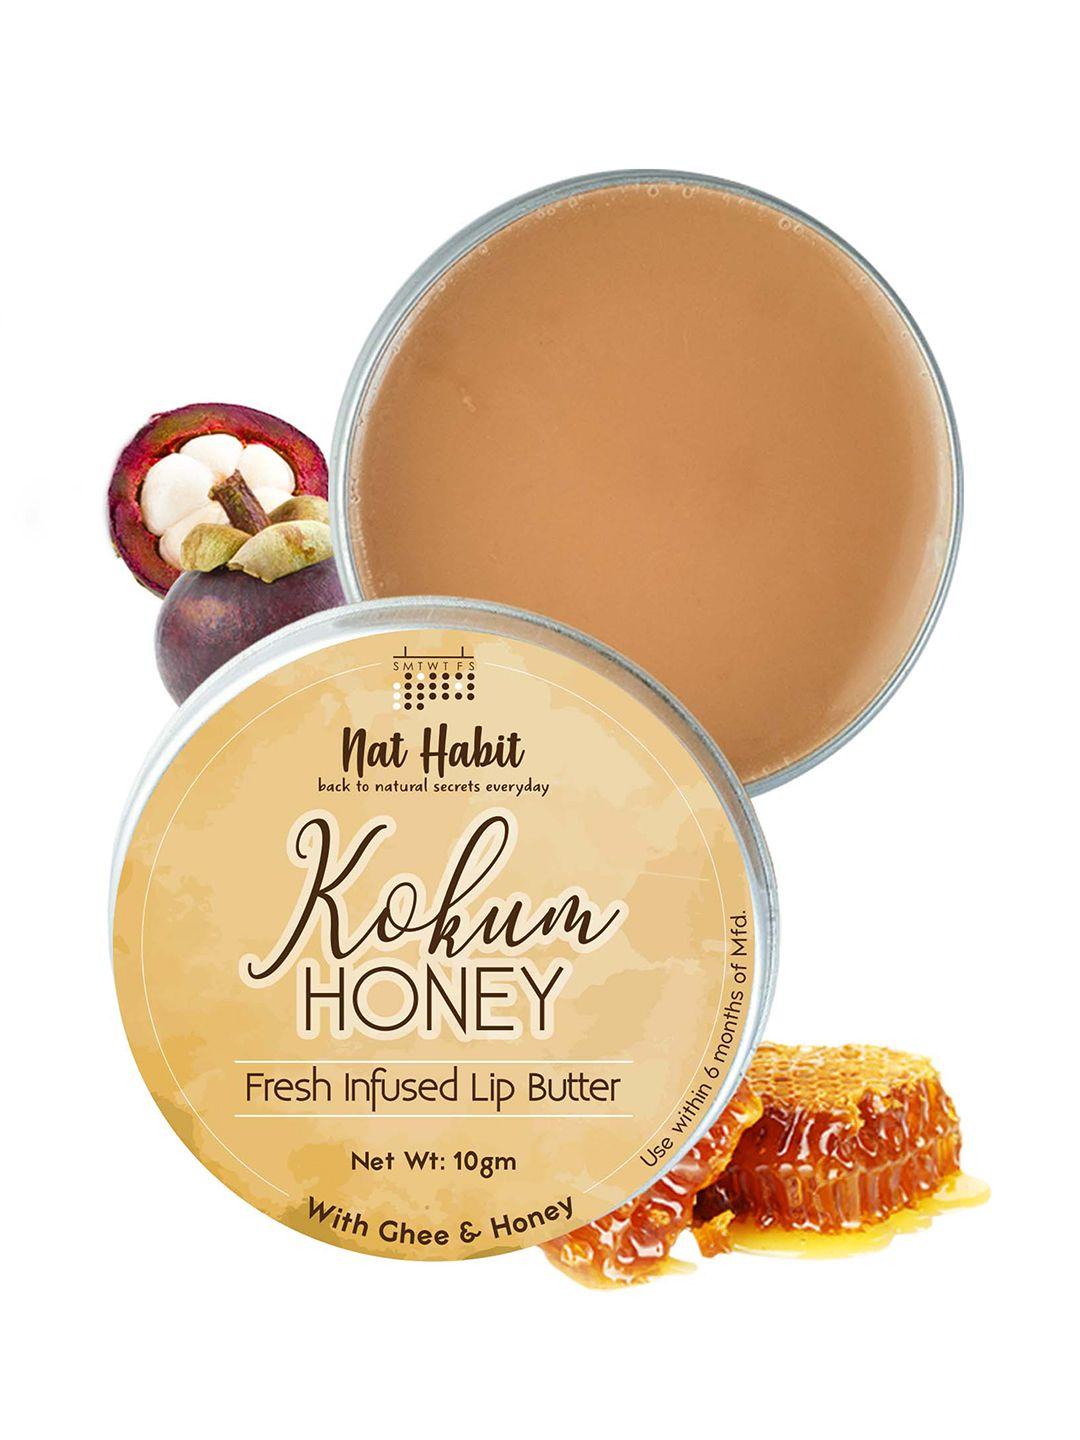 nat habit kokum honey fresh infused lip butter with ghee & honey - 10g